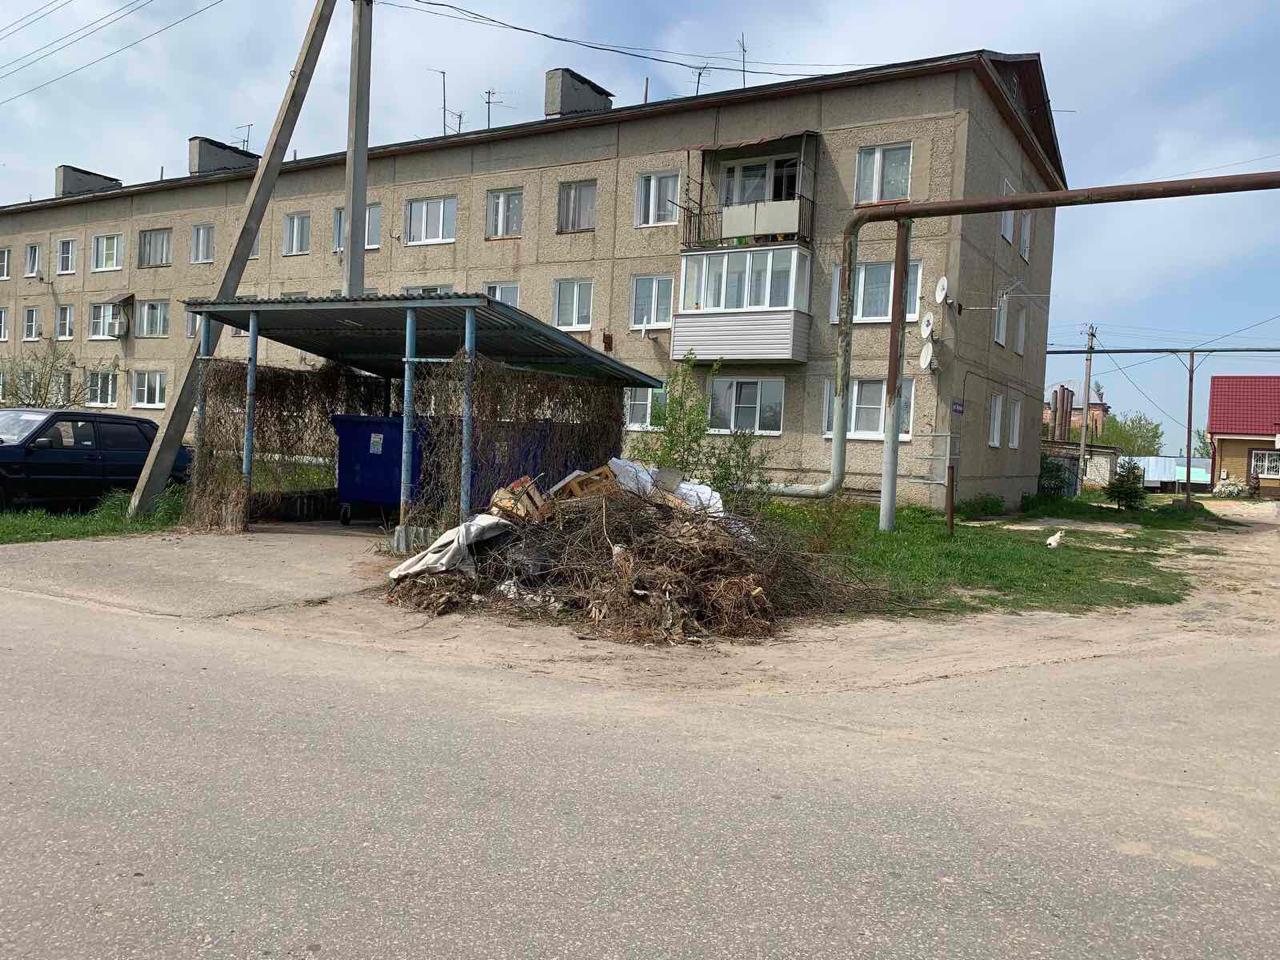 Министр экологии Нижегородской области Денис Егоров поручил до конца недели ликвидировать навалы мусора в регионе